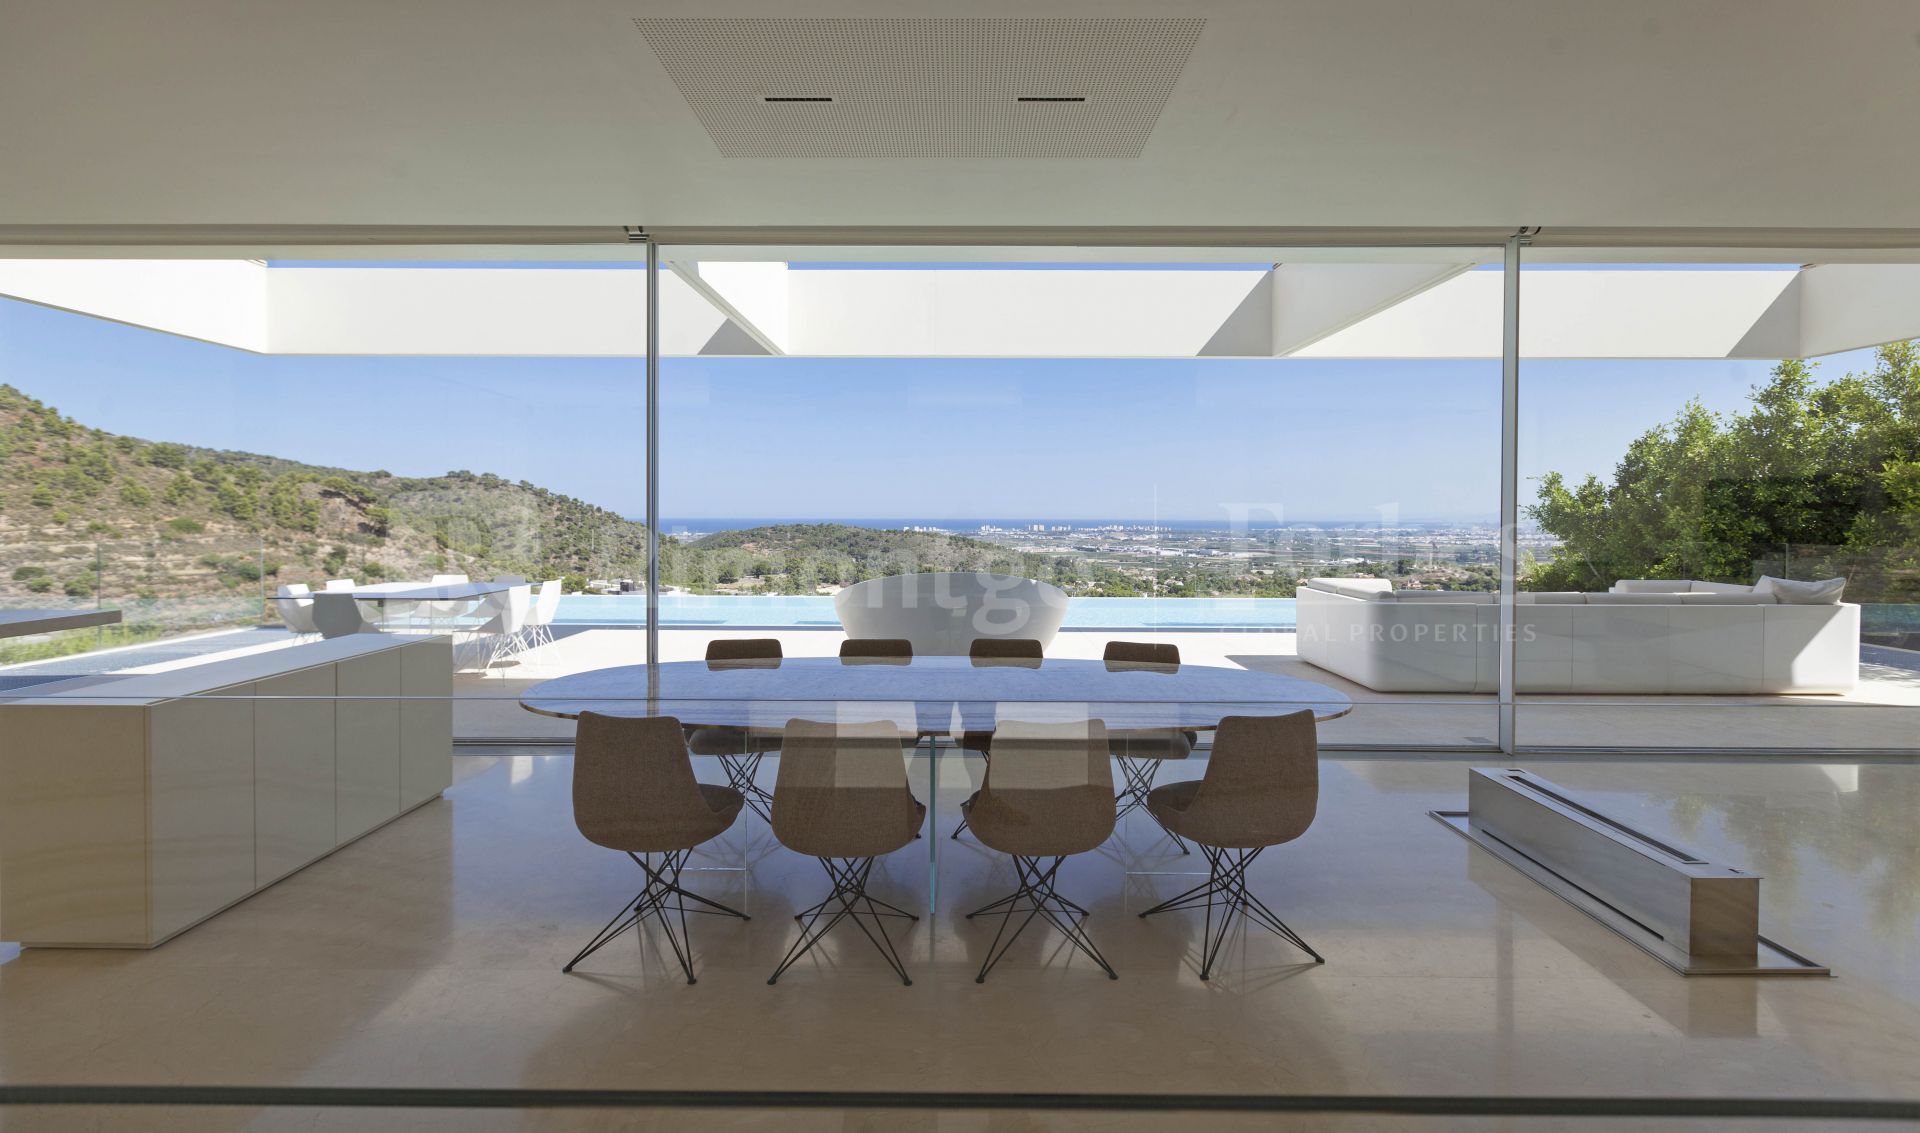 Exclusive modern villa overlooking the sea in Los Monasterios, Puçol, for sale.